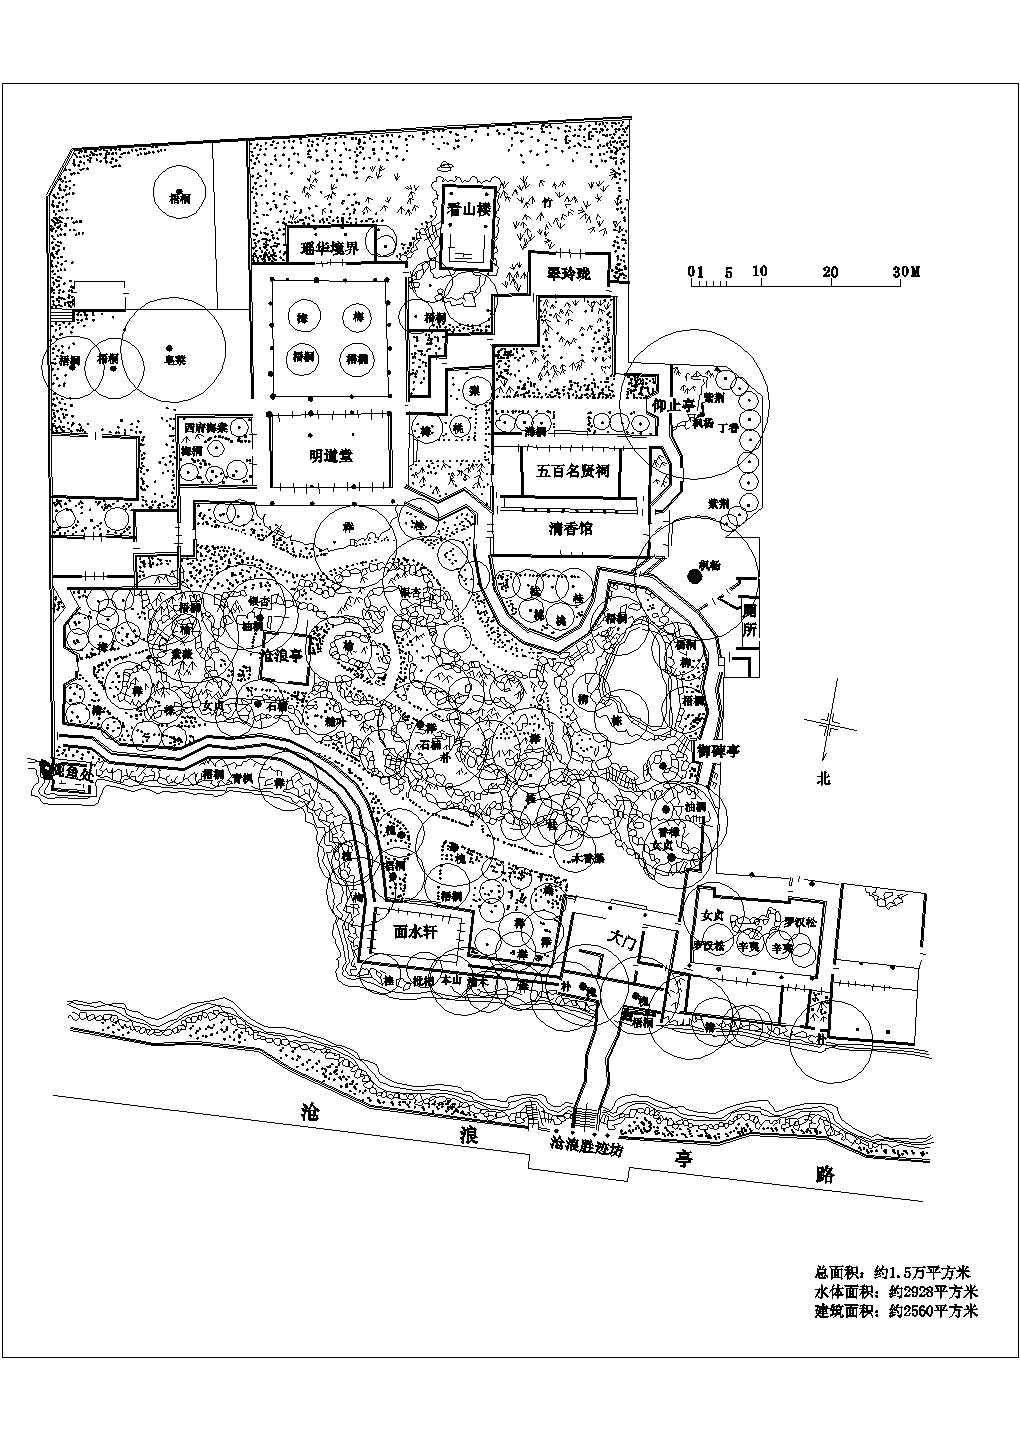 沧浪亭狮子林怡园拙政园的景观规划总平面图